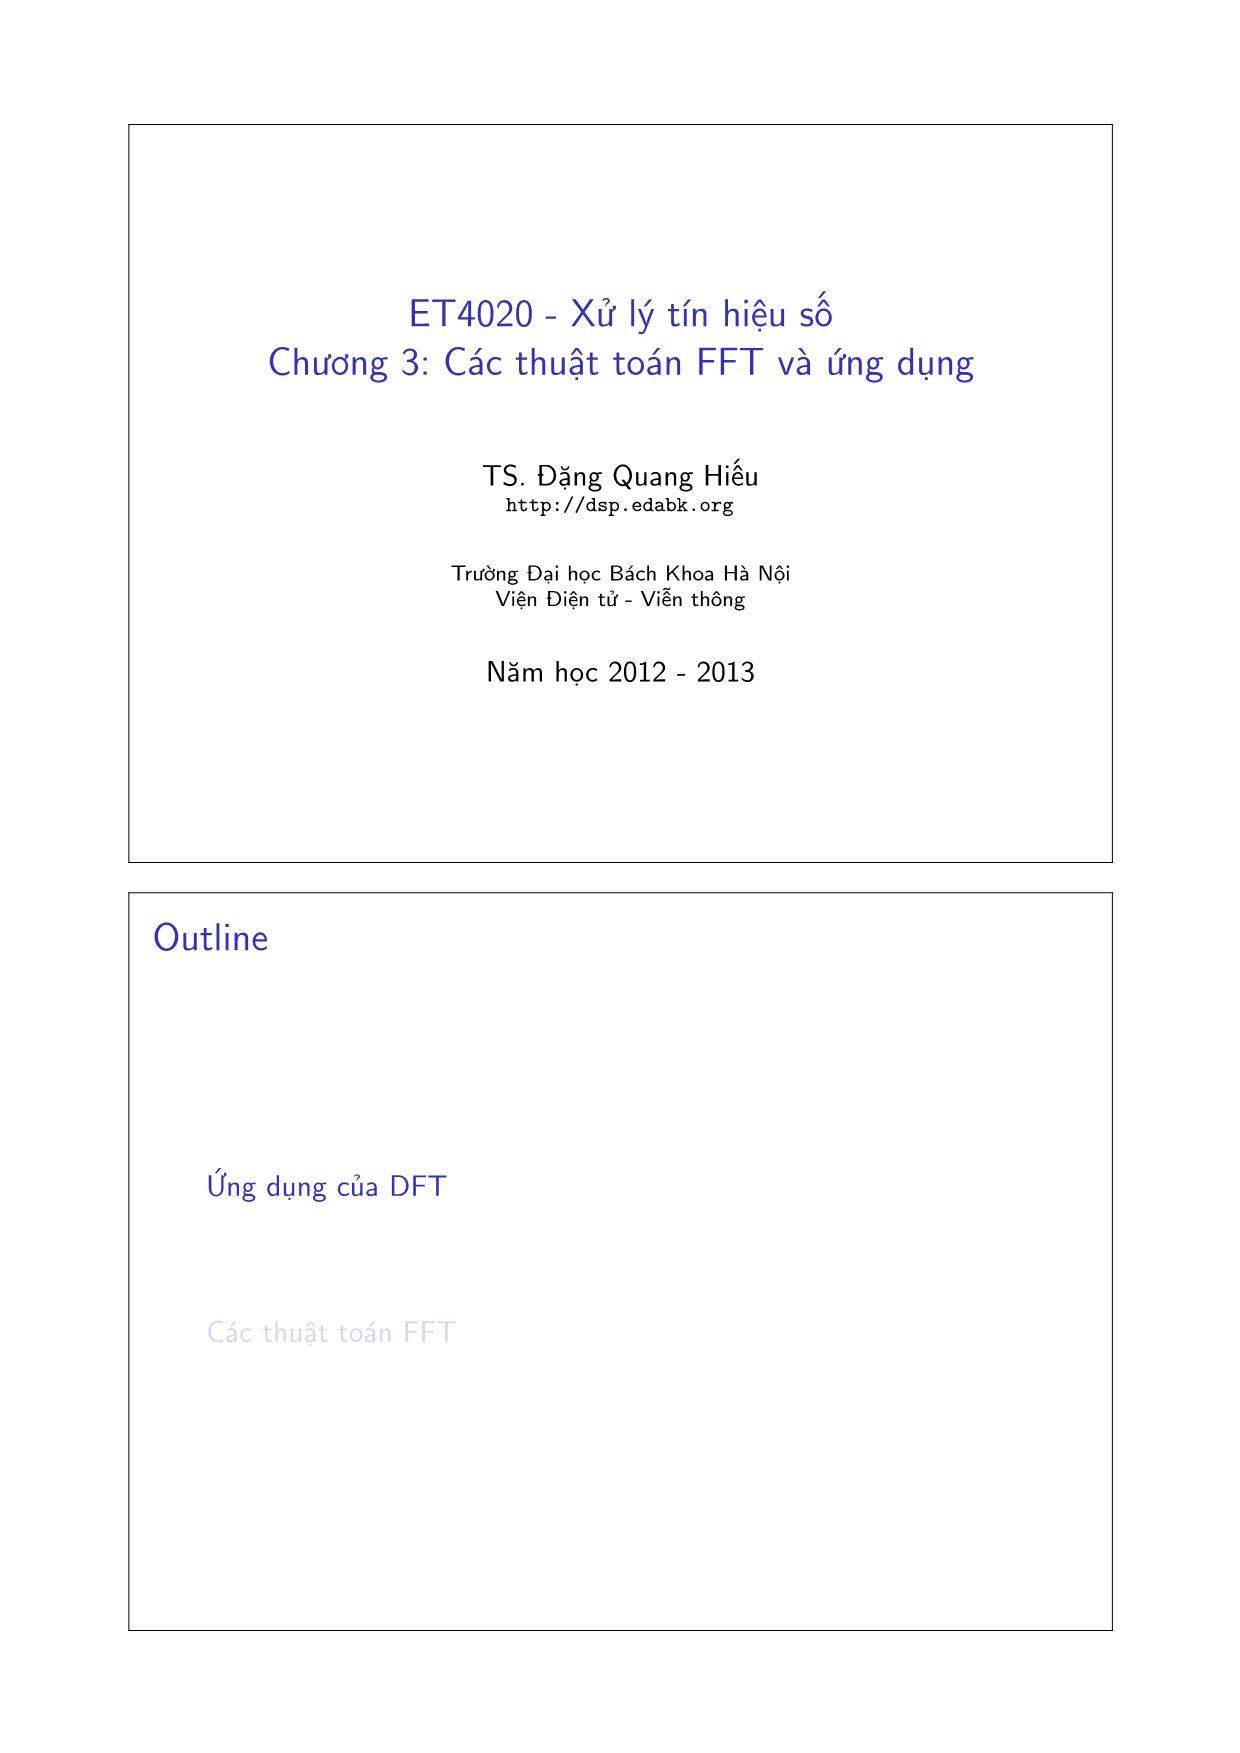 Bài giảng Xử lý tín hiệu số - Chương 3: Các thuật toán FFT và ứng dụng - Đặng Quang Hiếu trang 1